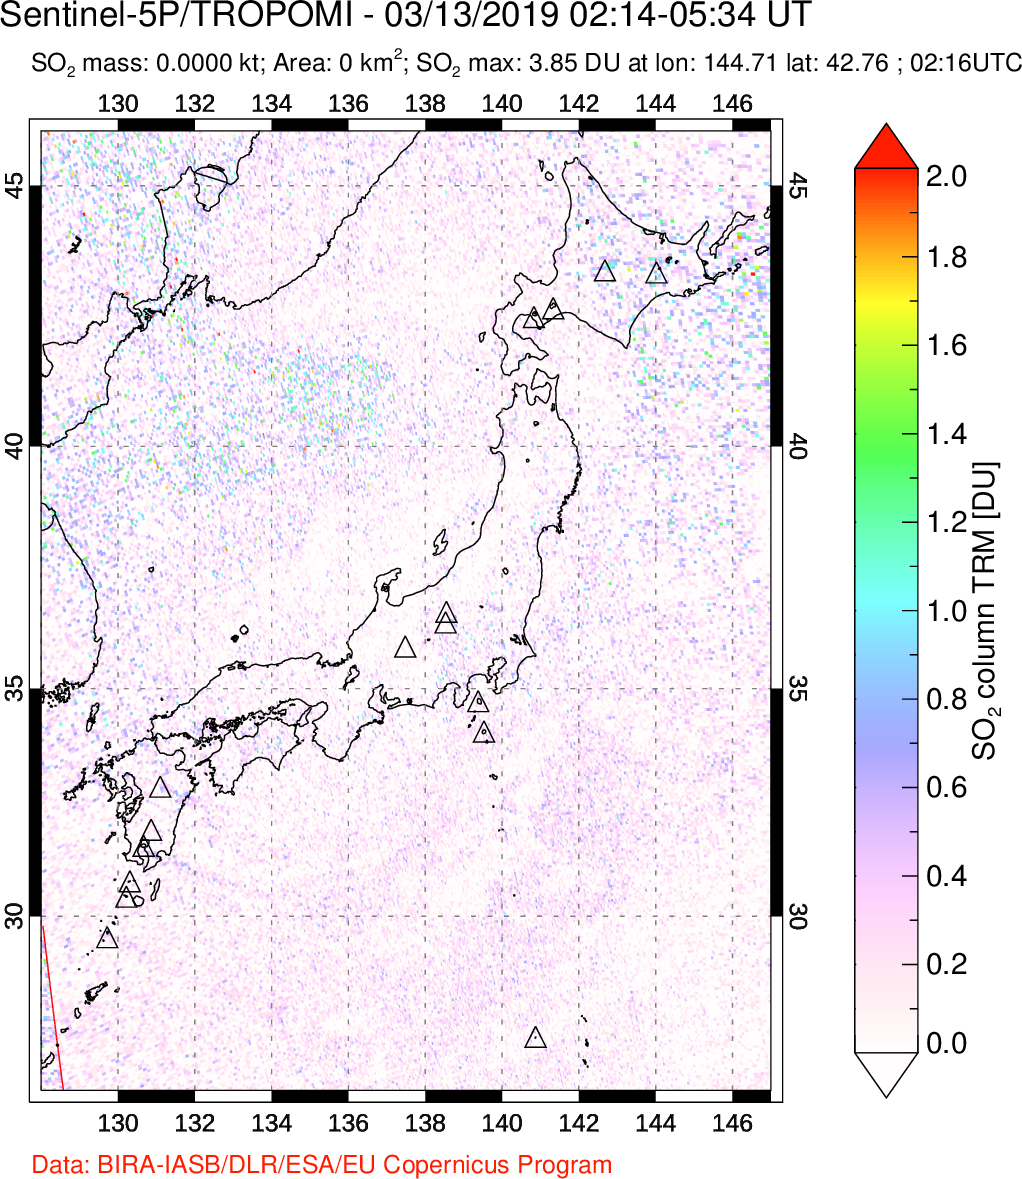 A sulfur dioxide image over Japan on Mar 13, 2019.